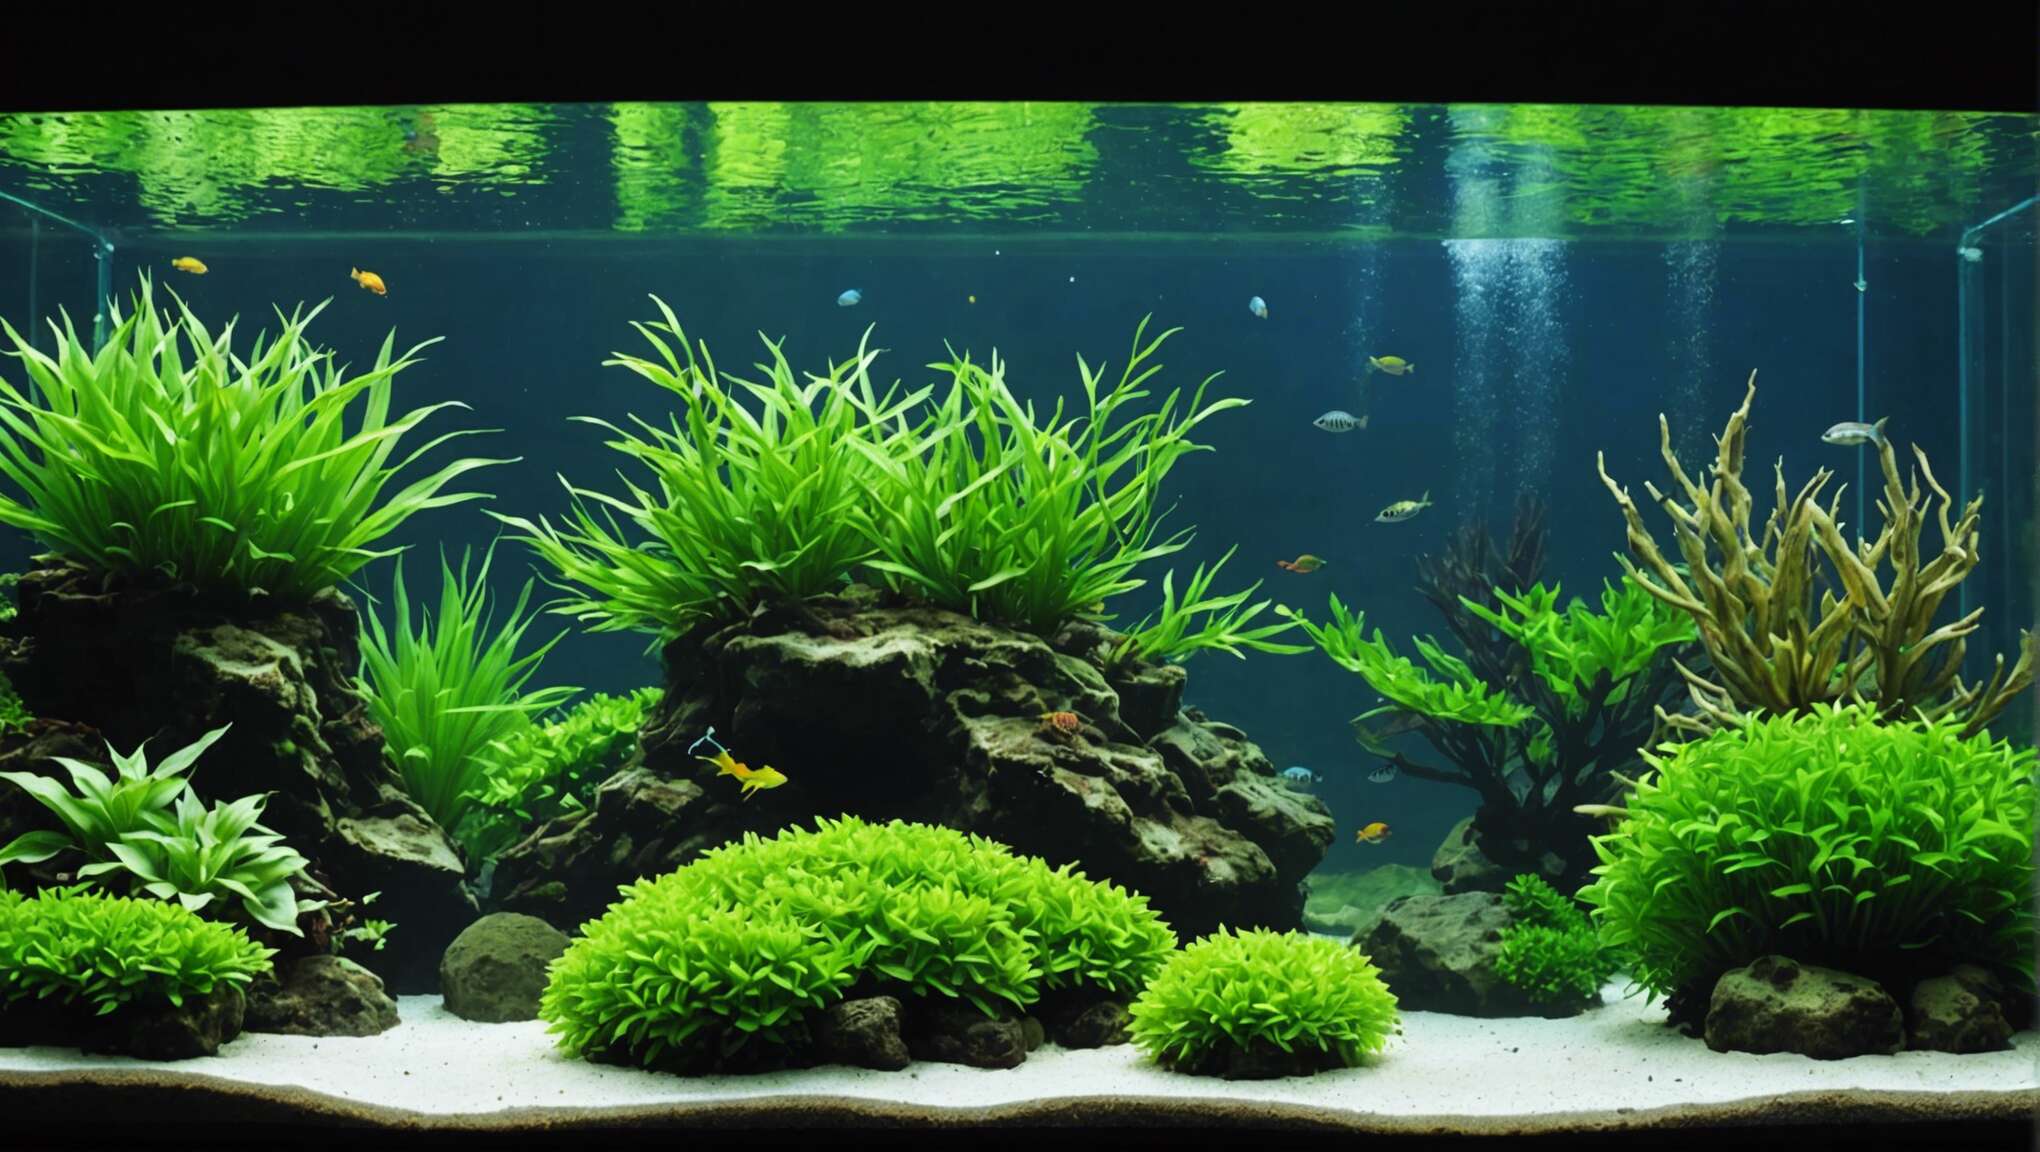 Quand et à quelle fréquence procéder à la taille des plantes aquatiques